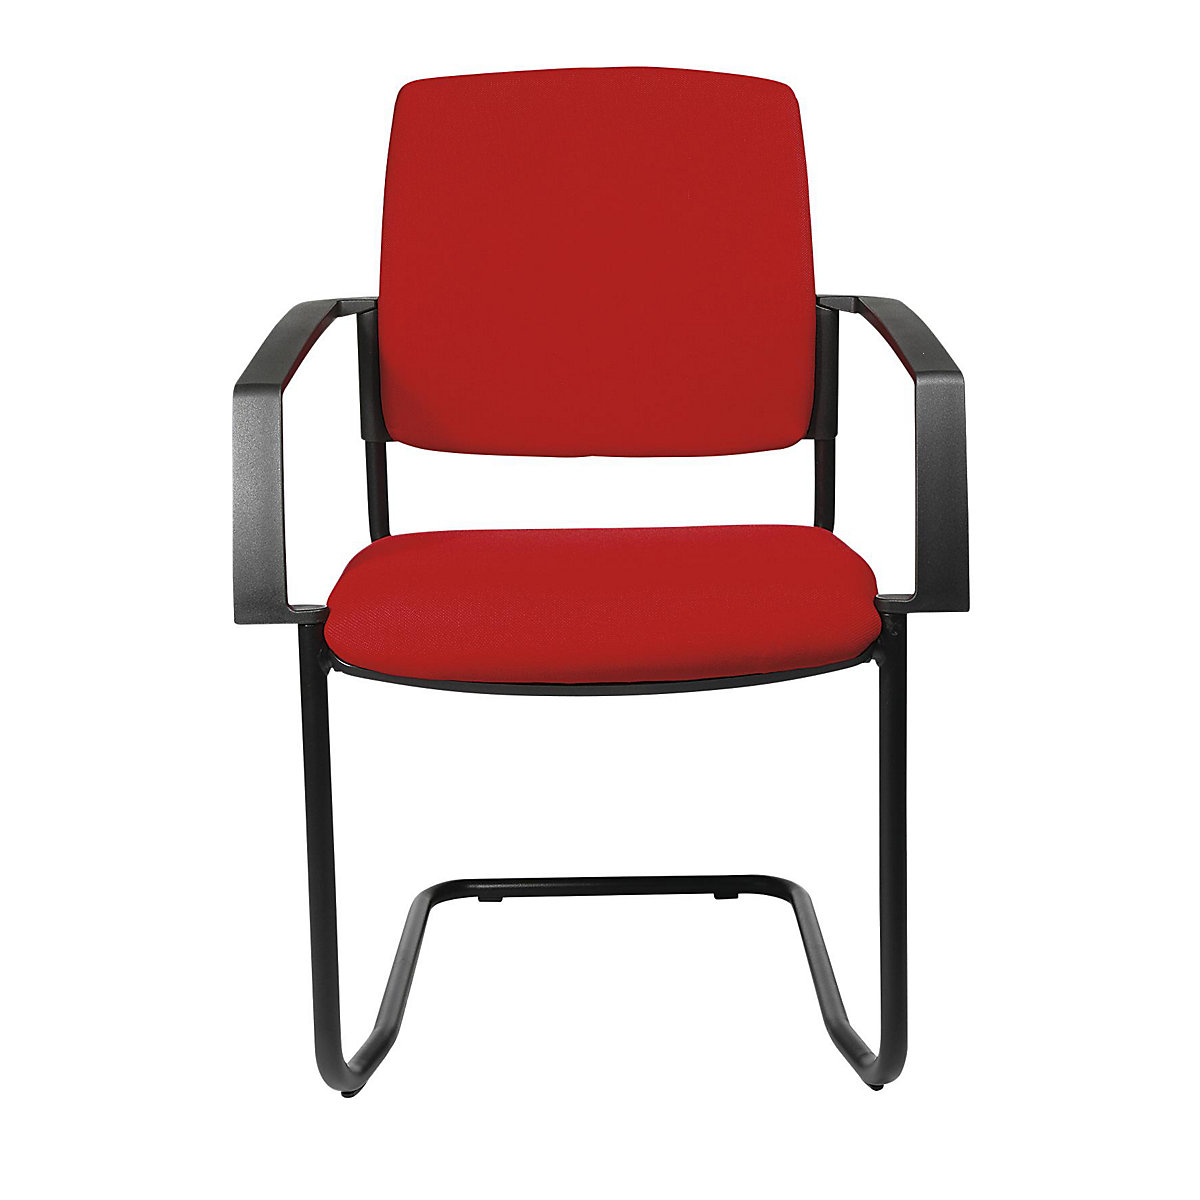 Čalúnená stohovacia stolička – Topstar, kreslo na pružnom podloží, OJ 2 ks, podstavec čierna, čalúnenie červená-7